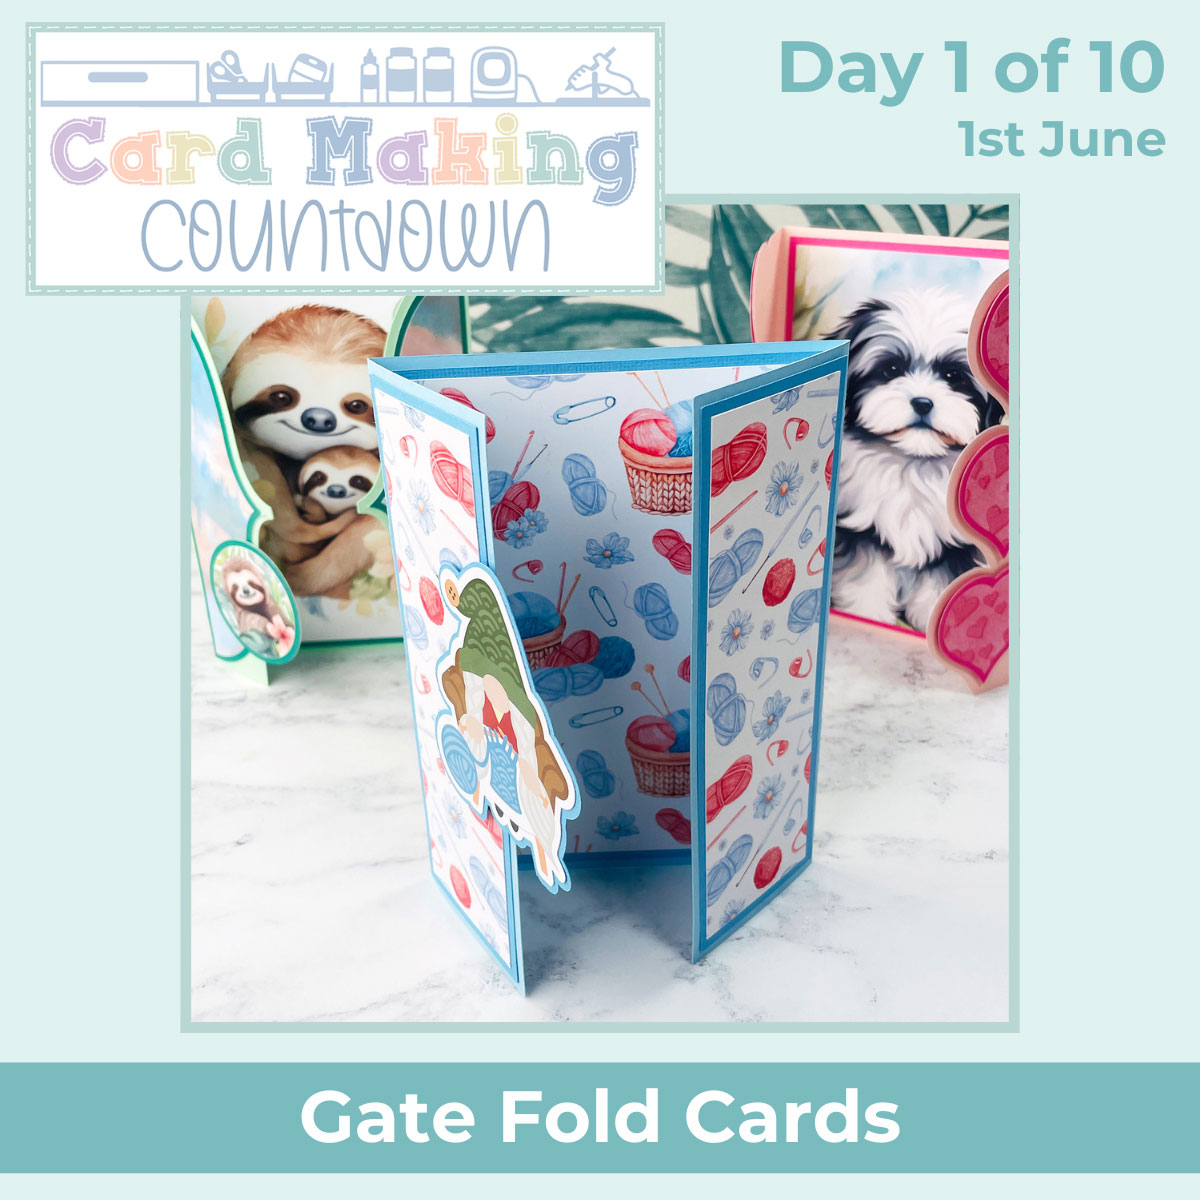 Gate fold card templates